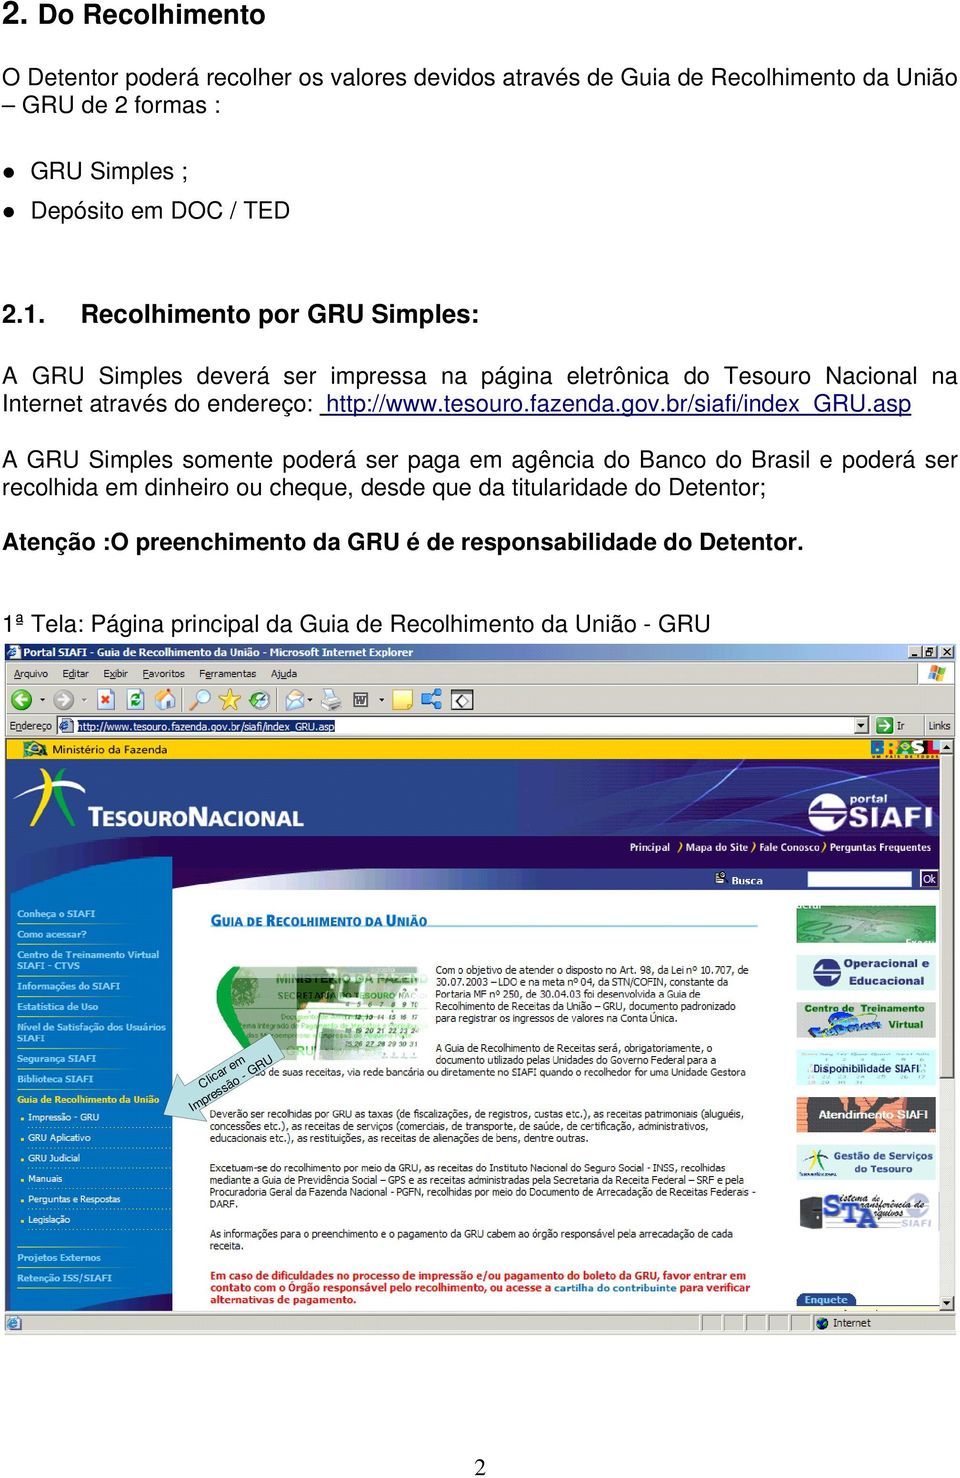 gov.br/siafi/index_gru.